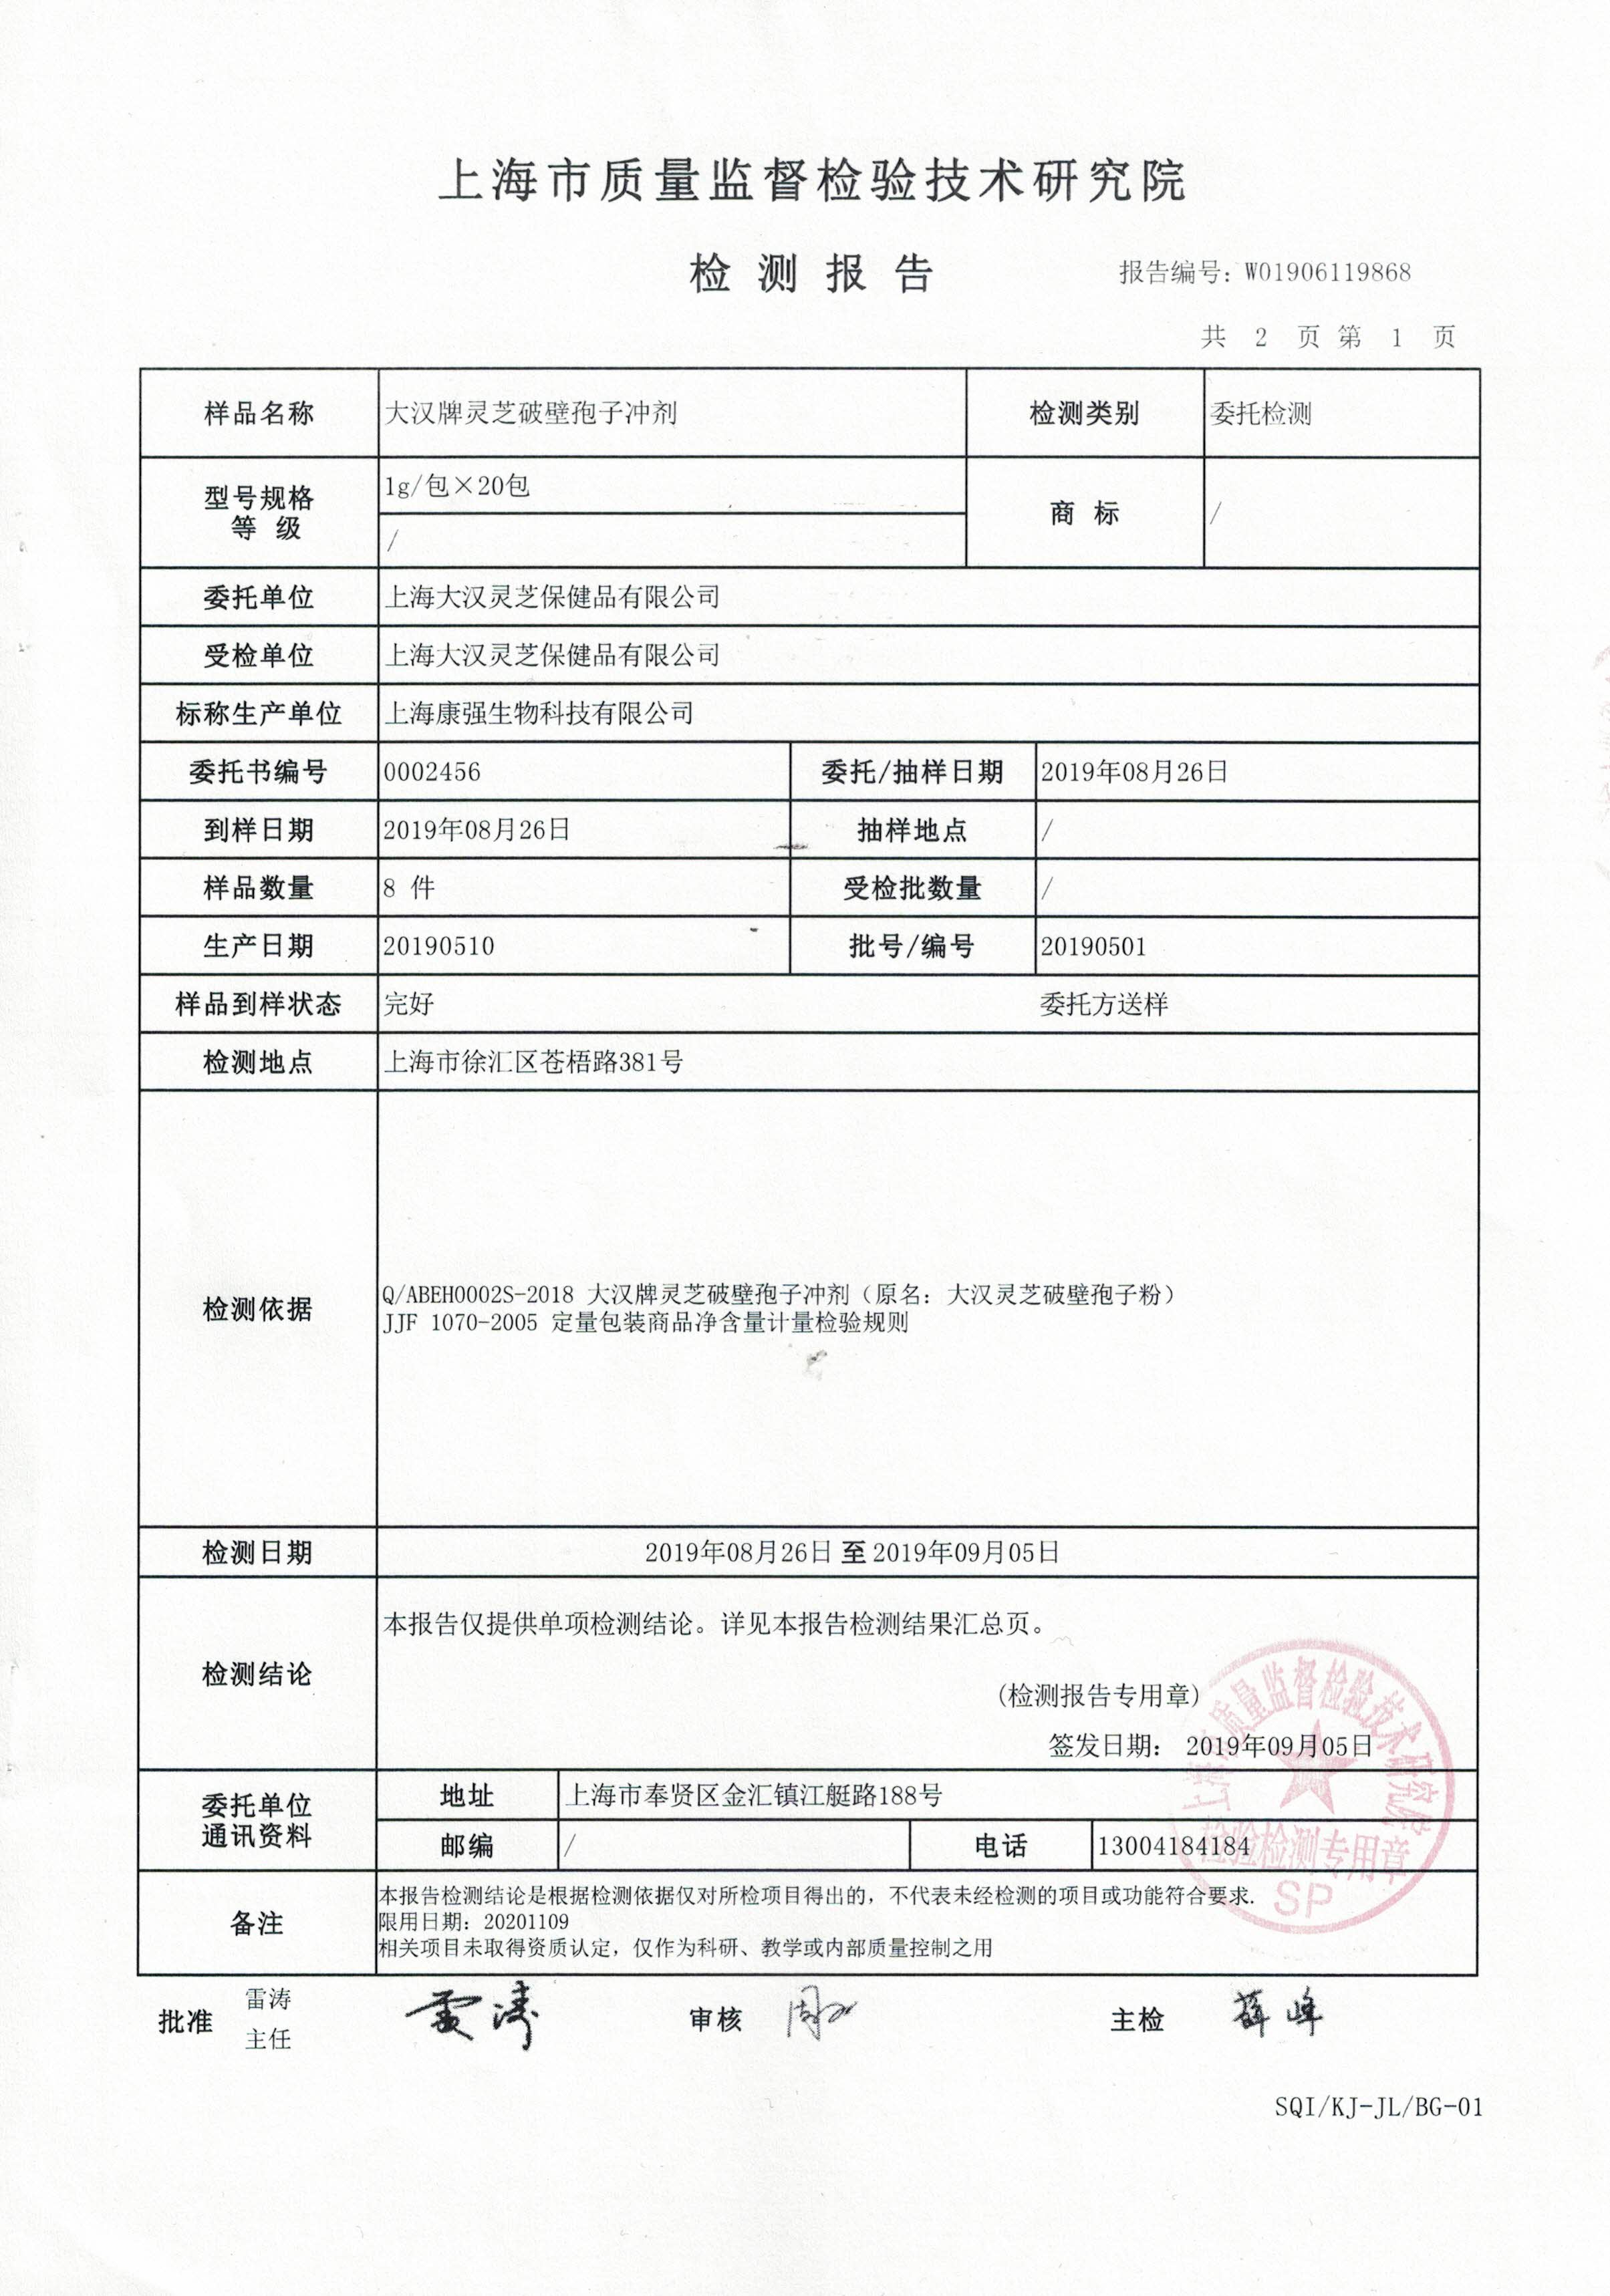 2019年 8月26日 菇新 大汉牌灵芝破壁孢子冲剂 产品检测报告